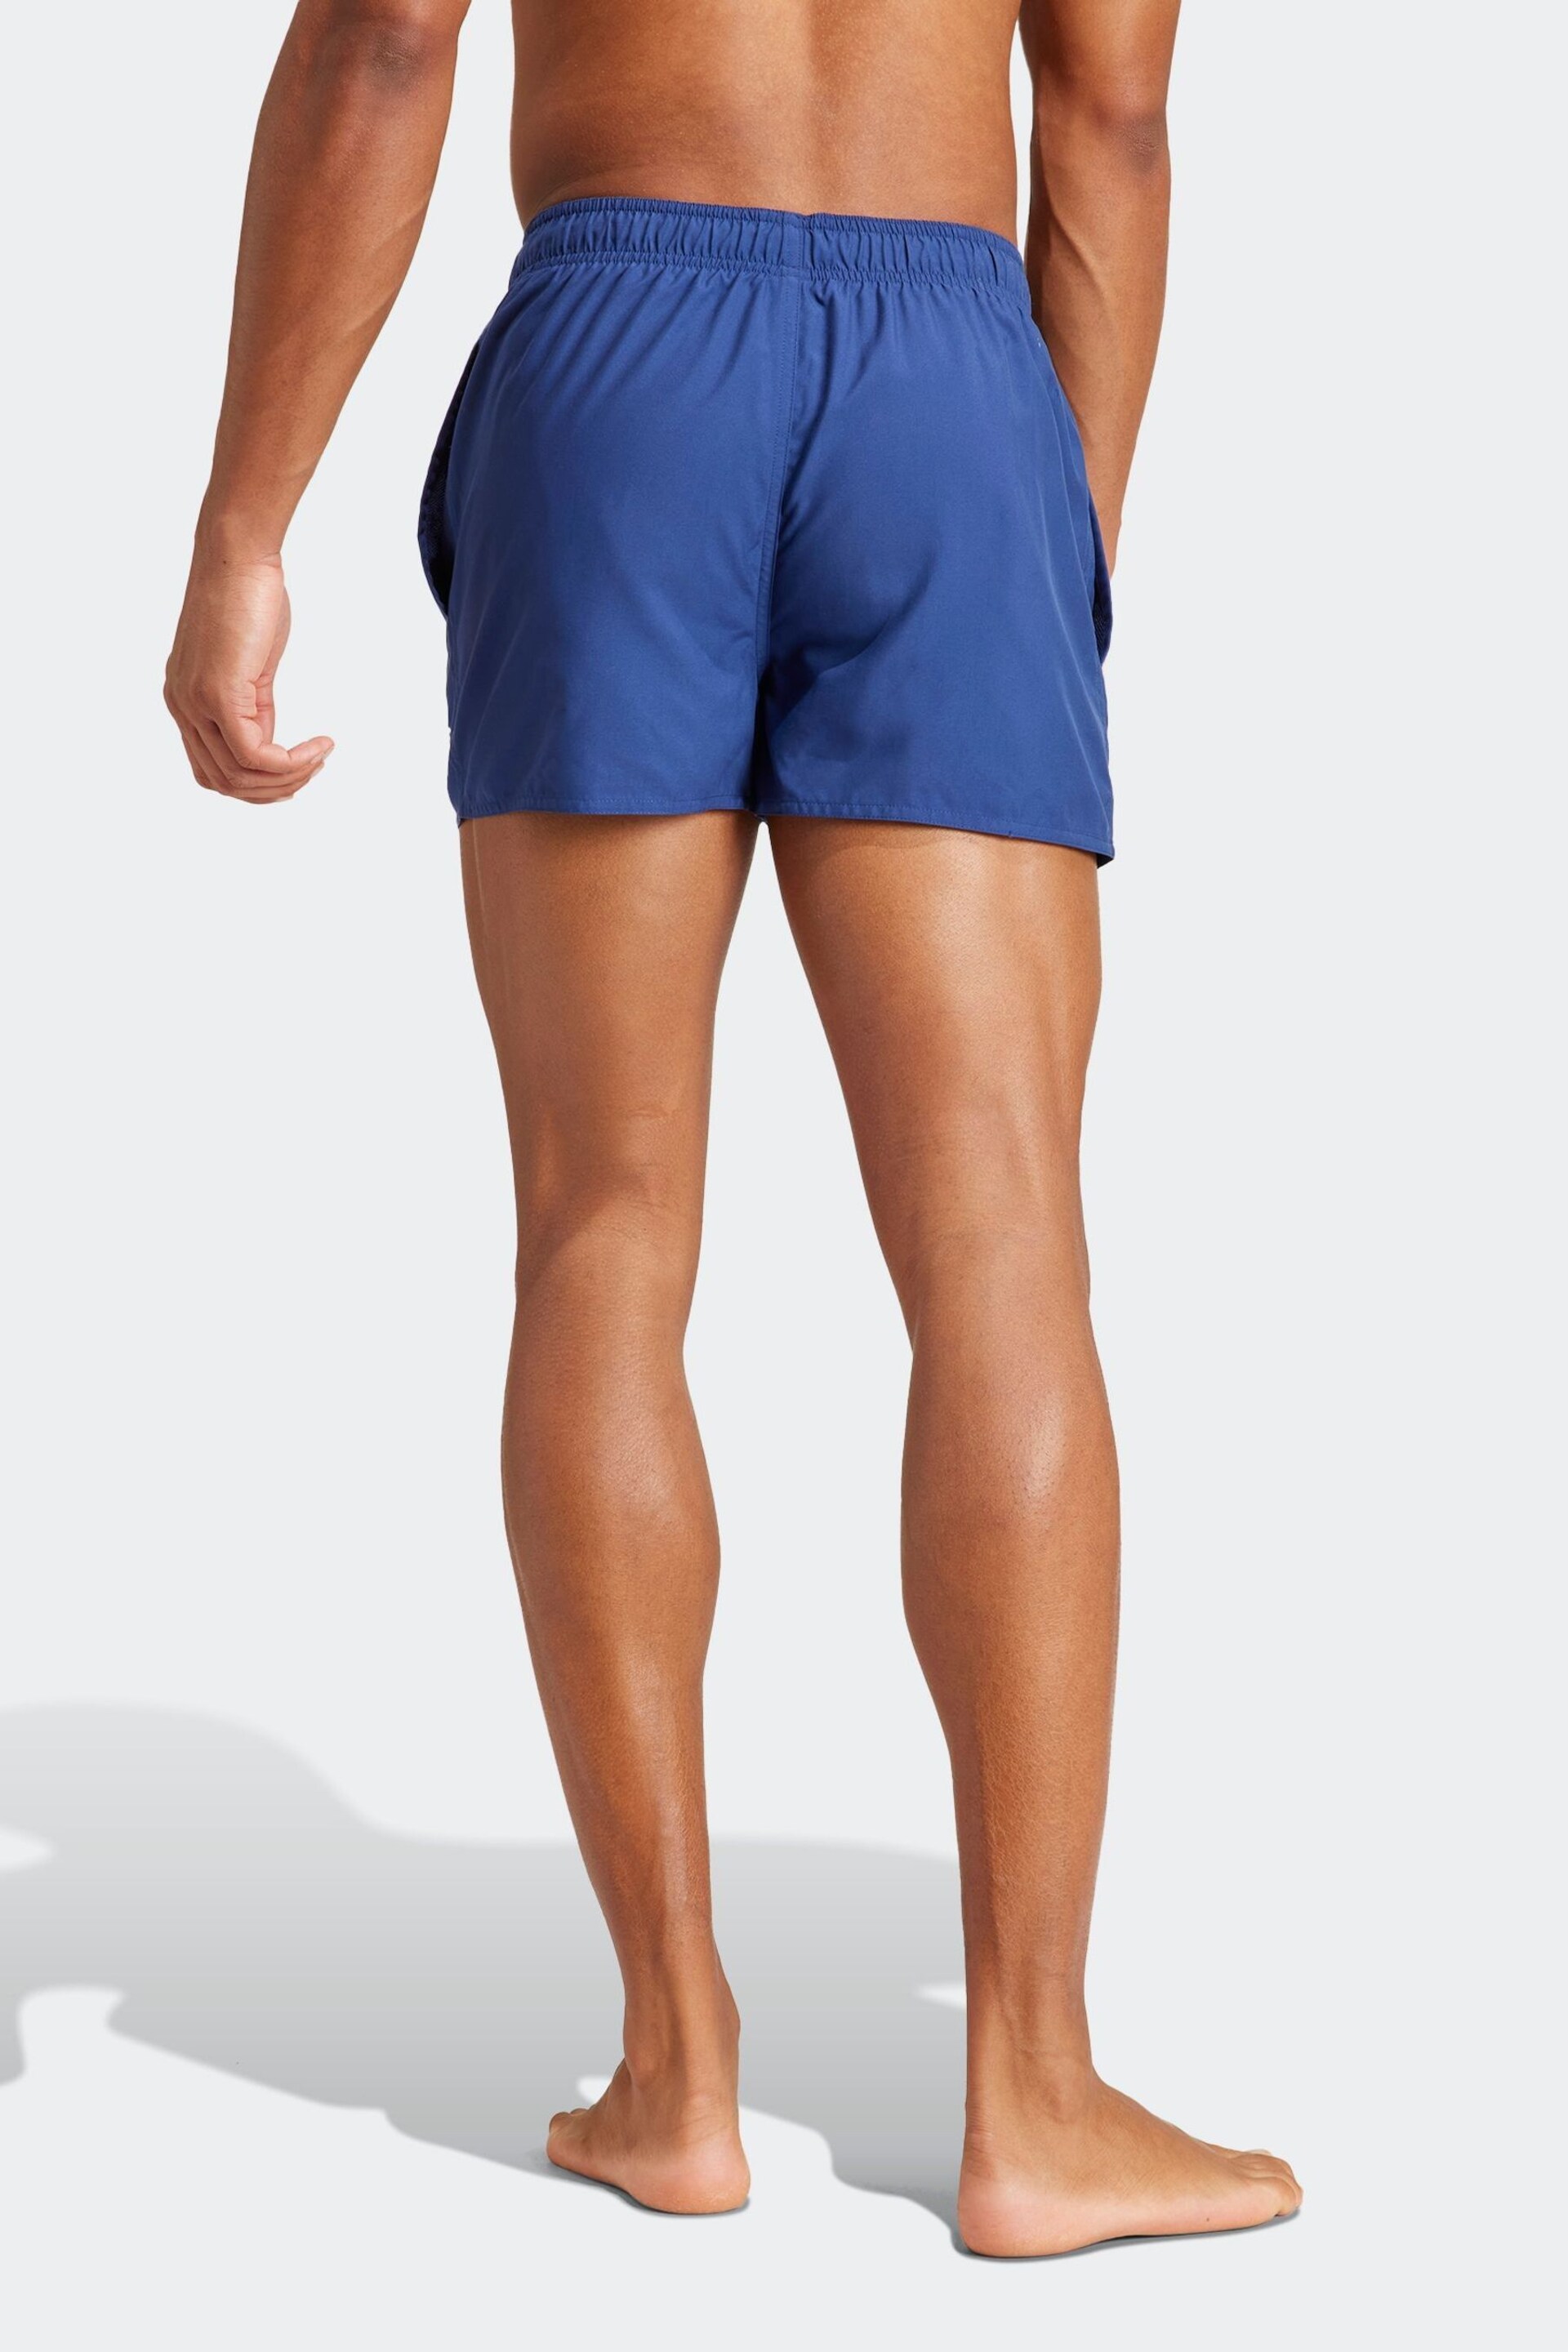 adidas Blue Essentials Logo Clx Shorts - Image 3 of 7